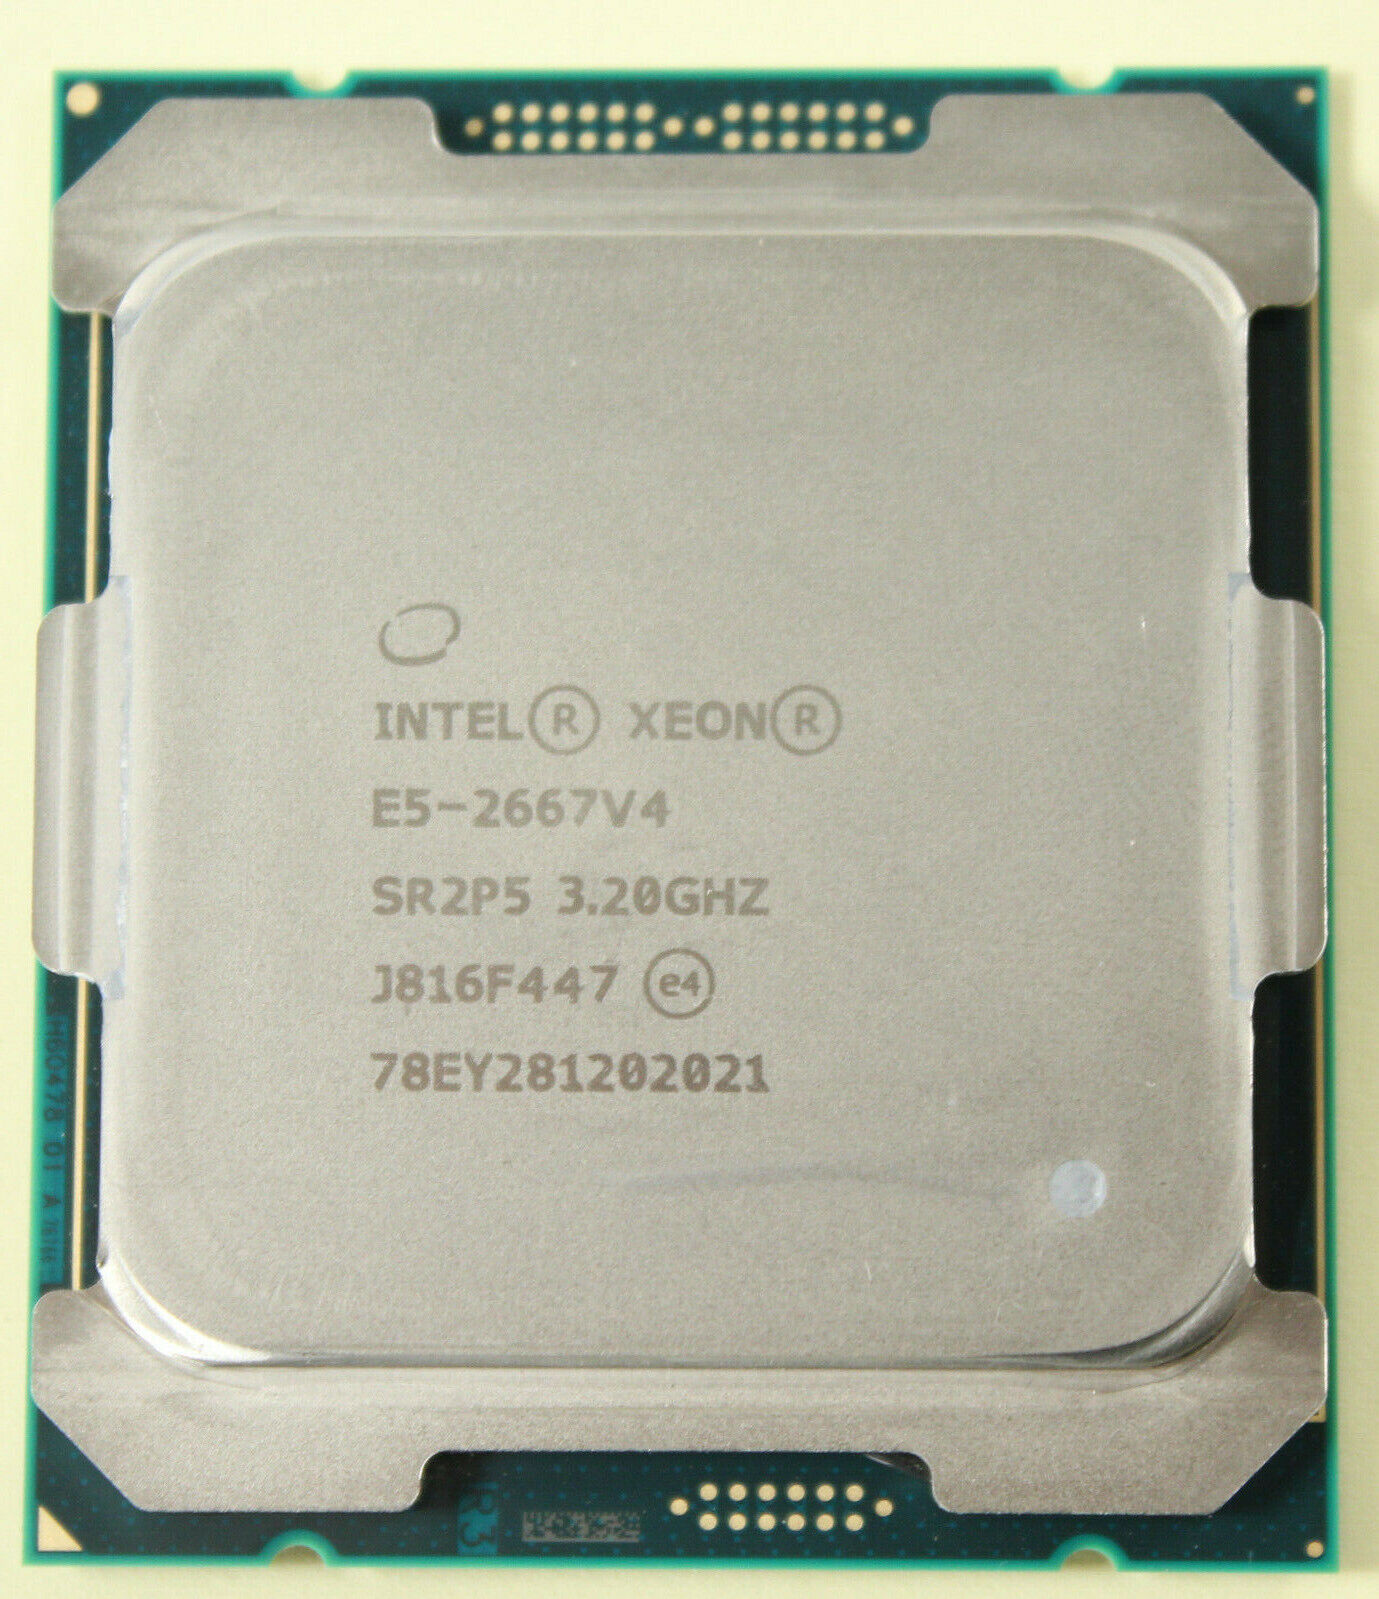 Intel Xeon E5-2667 V4 3.2GHz 25MB 9.6GT/s SR2P5 LGA2011 CPU server Processor 